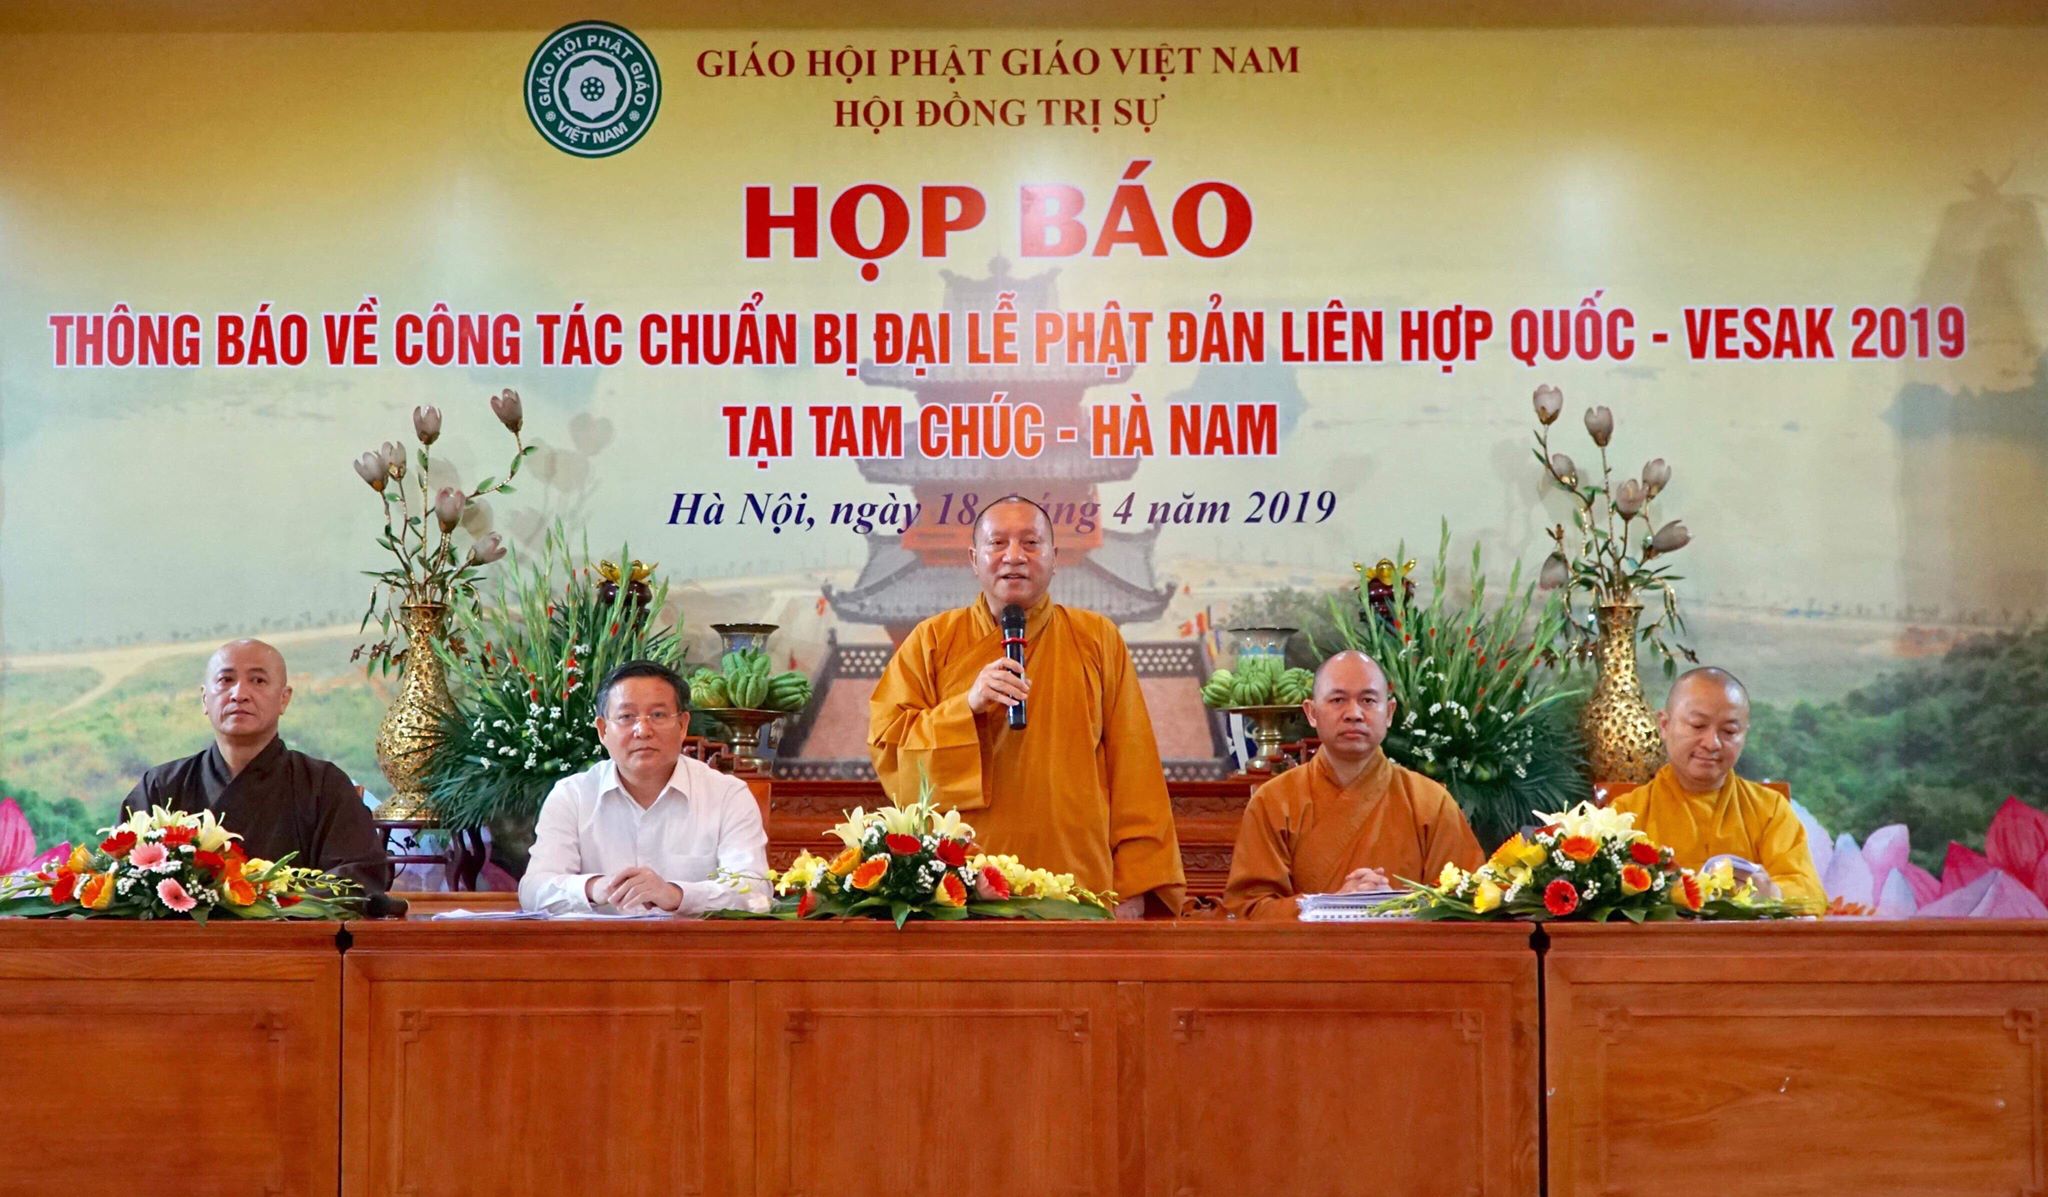 Hòa thượng Thích Gia Quang - Phó Chủ tịch kiêm Trưởng Ban Thông tin truyền thông GHPGVN